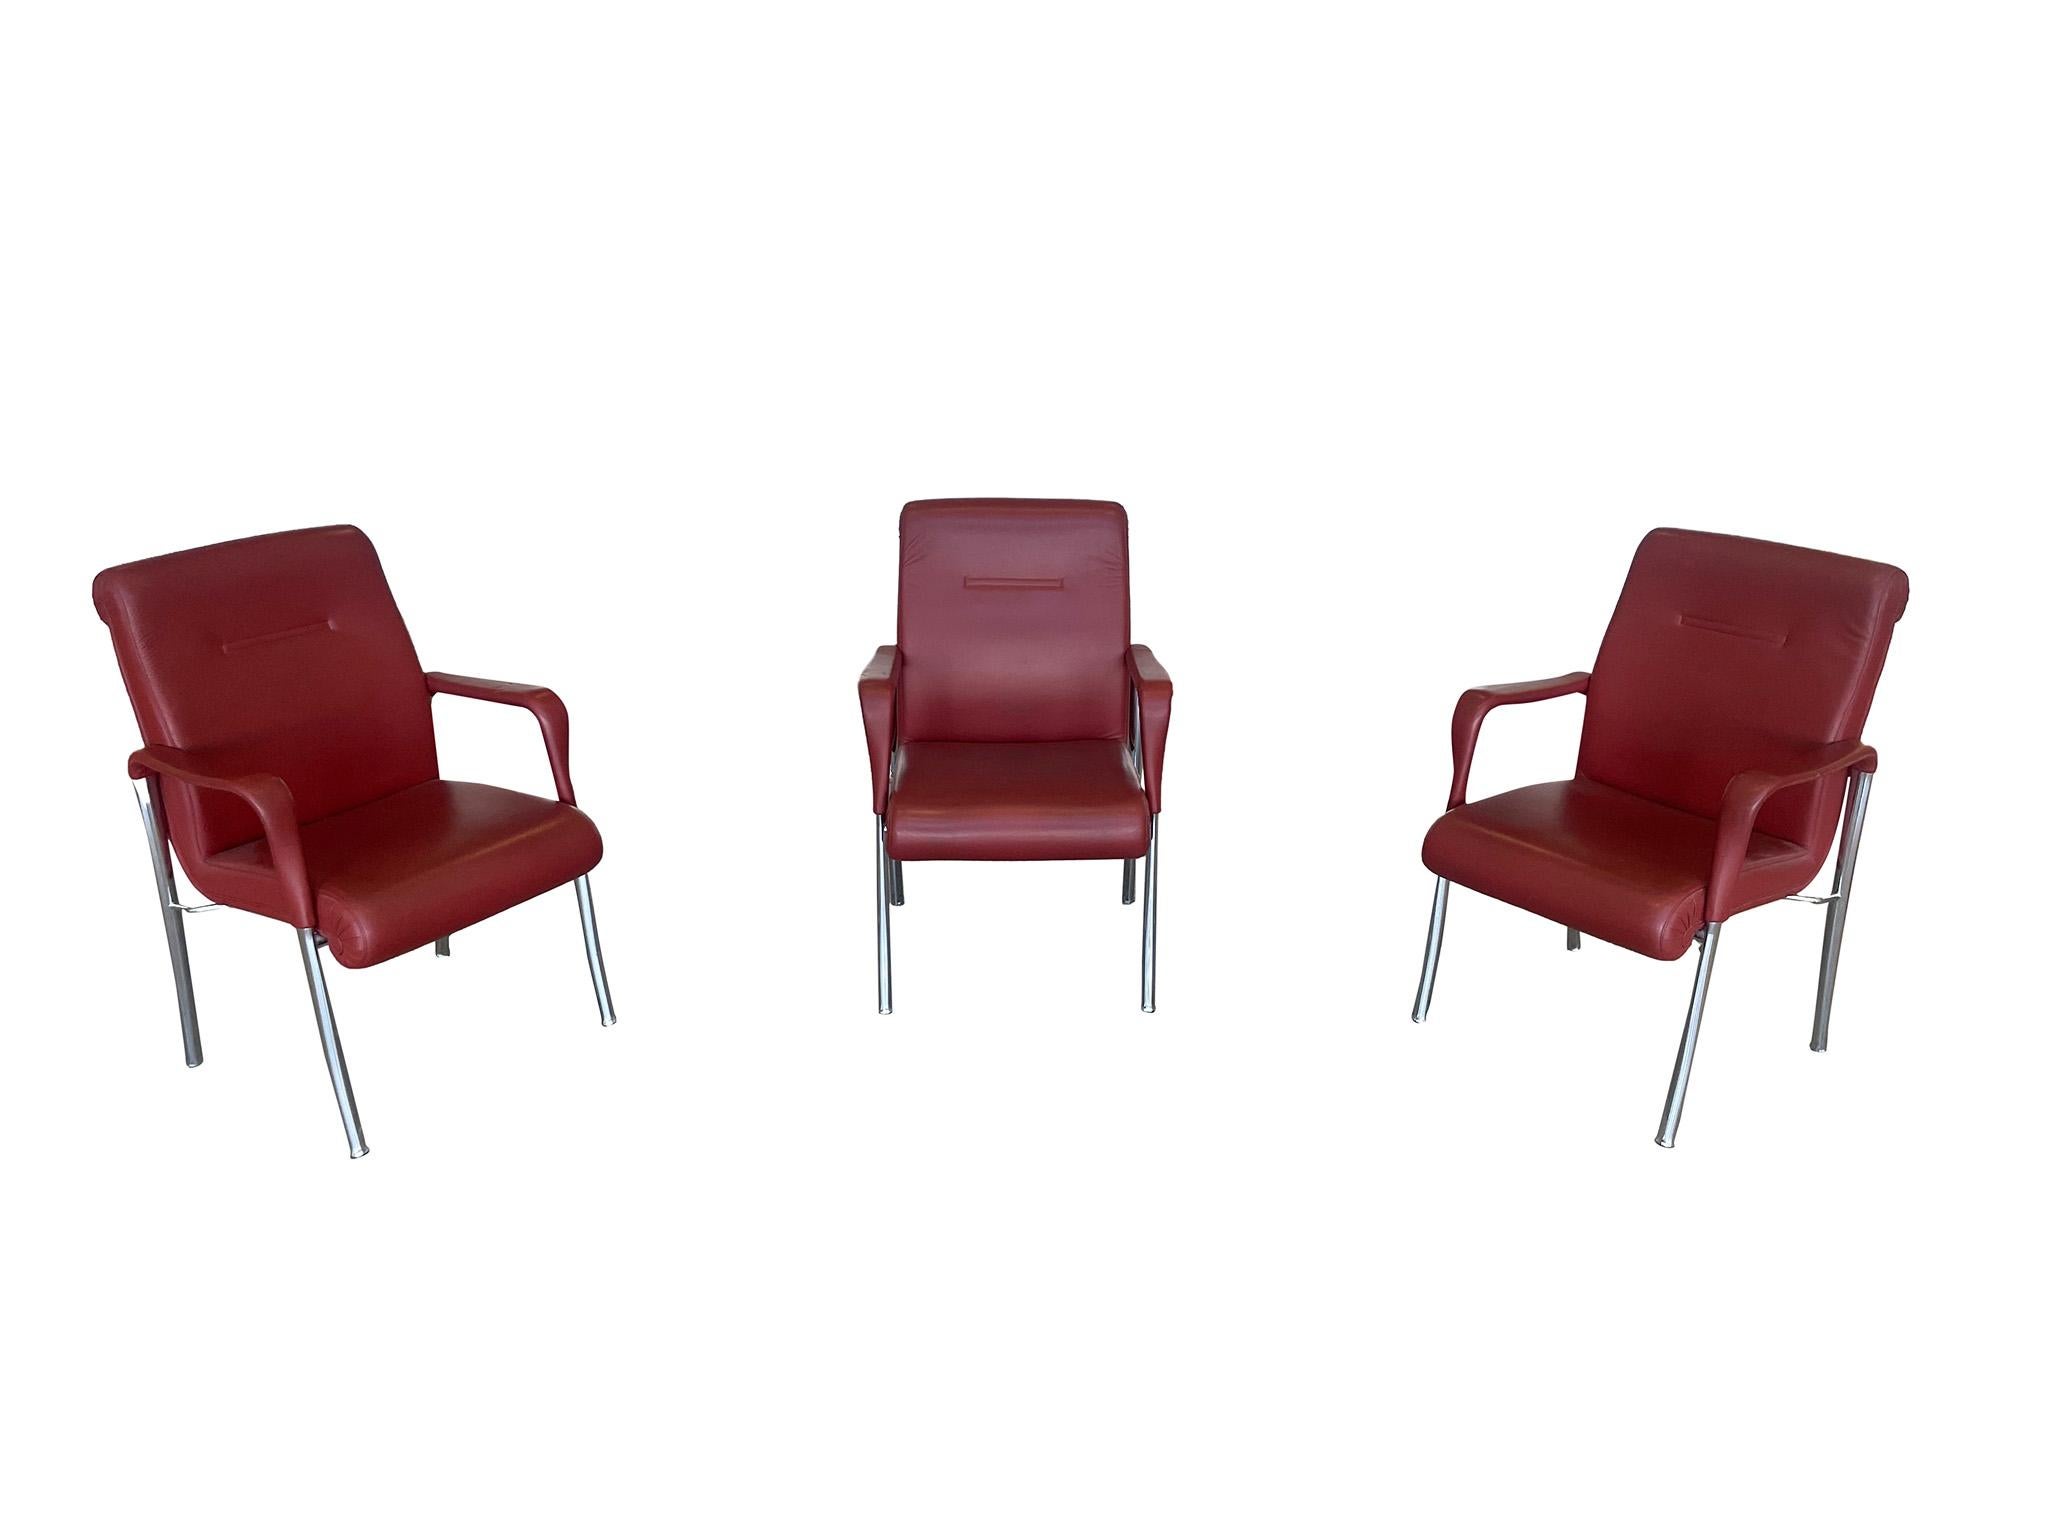 Trois fabuleuses chaises de salle à manger ou de bureau de l'emblématique fabricant de chaises italien Poltrona Frau. Il se caractérise par la qualité du cuir, le savoir-faire artisanal et les bords en spirale ouverts qui sont communs à toutes les